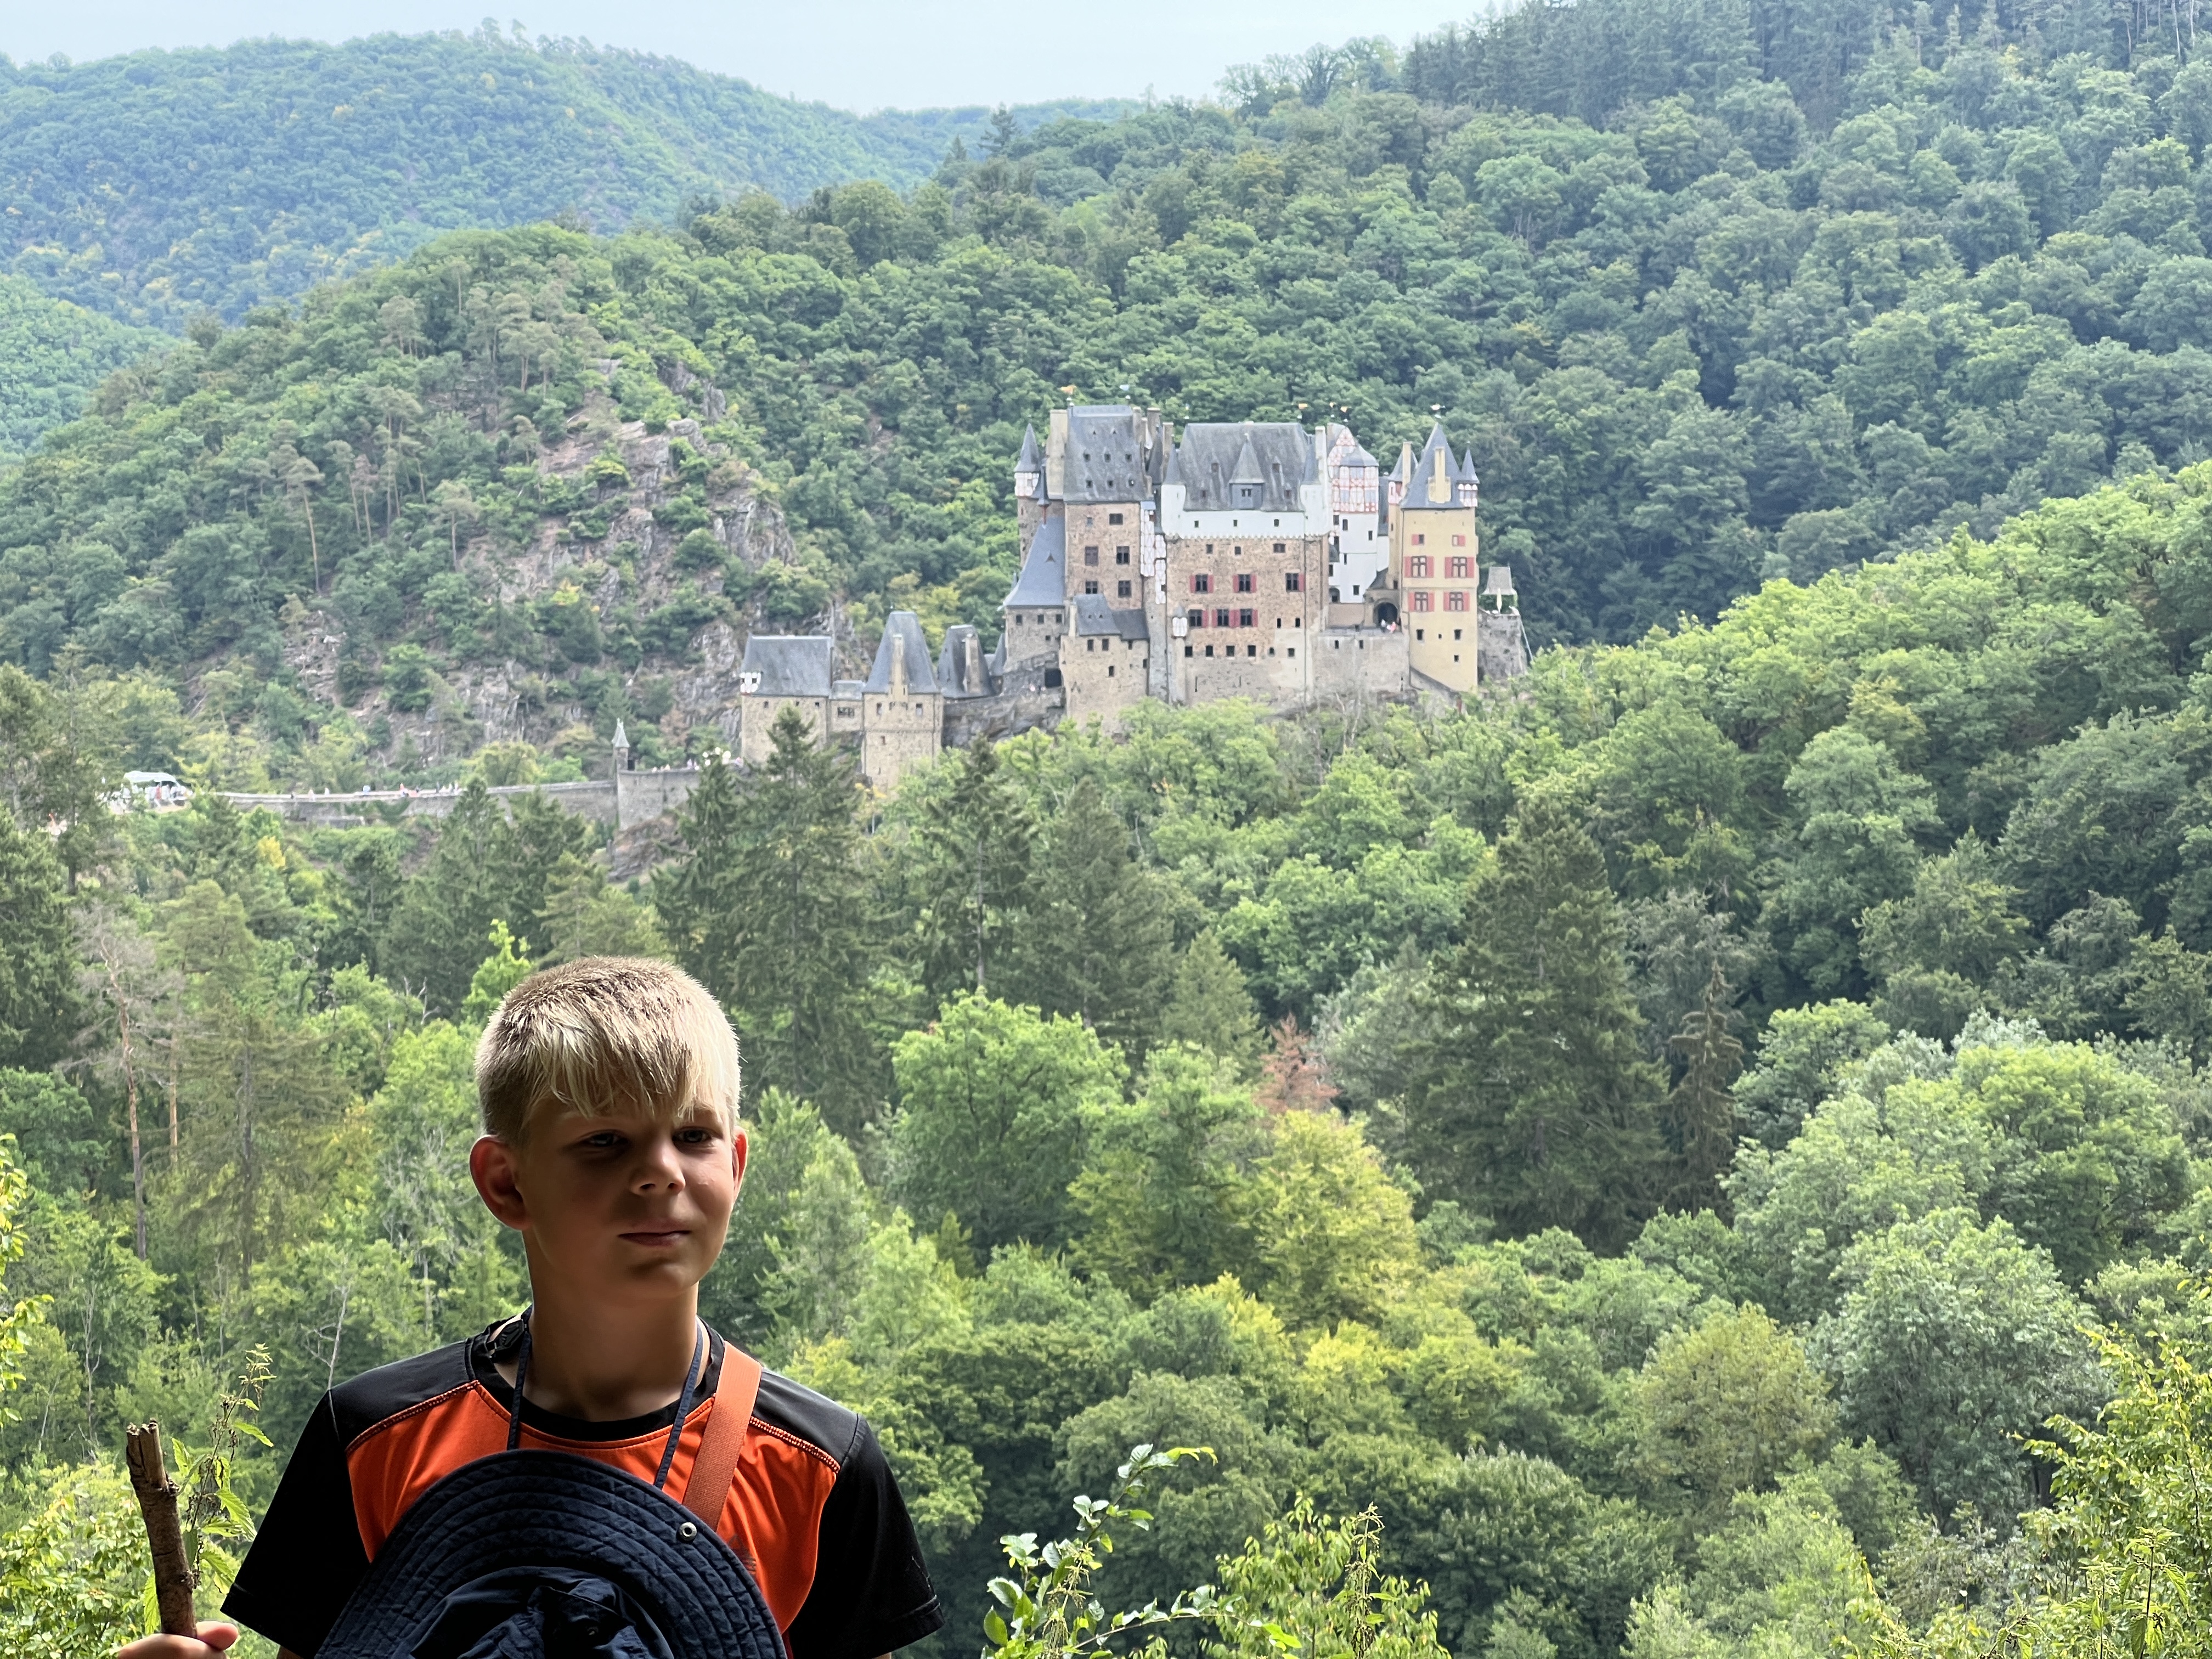 Buchsbaumpfad und Burg Eltz – Familienwanderung an der Mosel